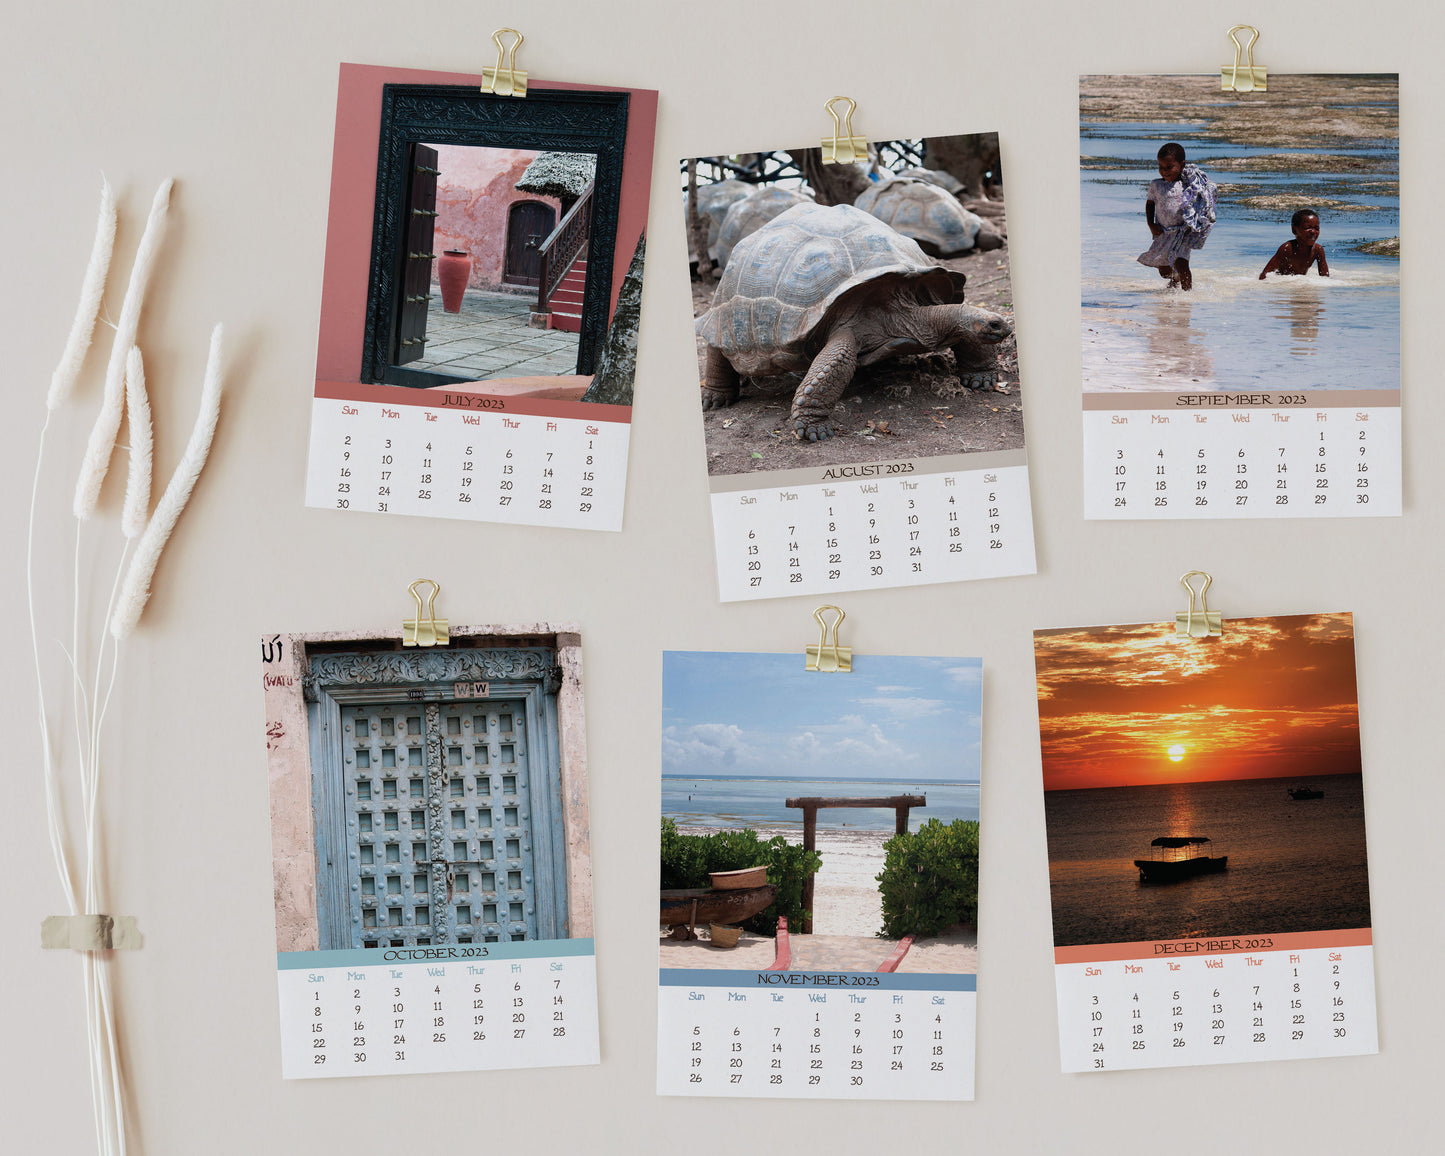 2023 Photo Calendar - Zanzibar, Tanzania, Africa